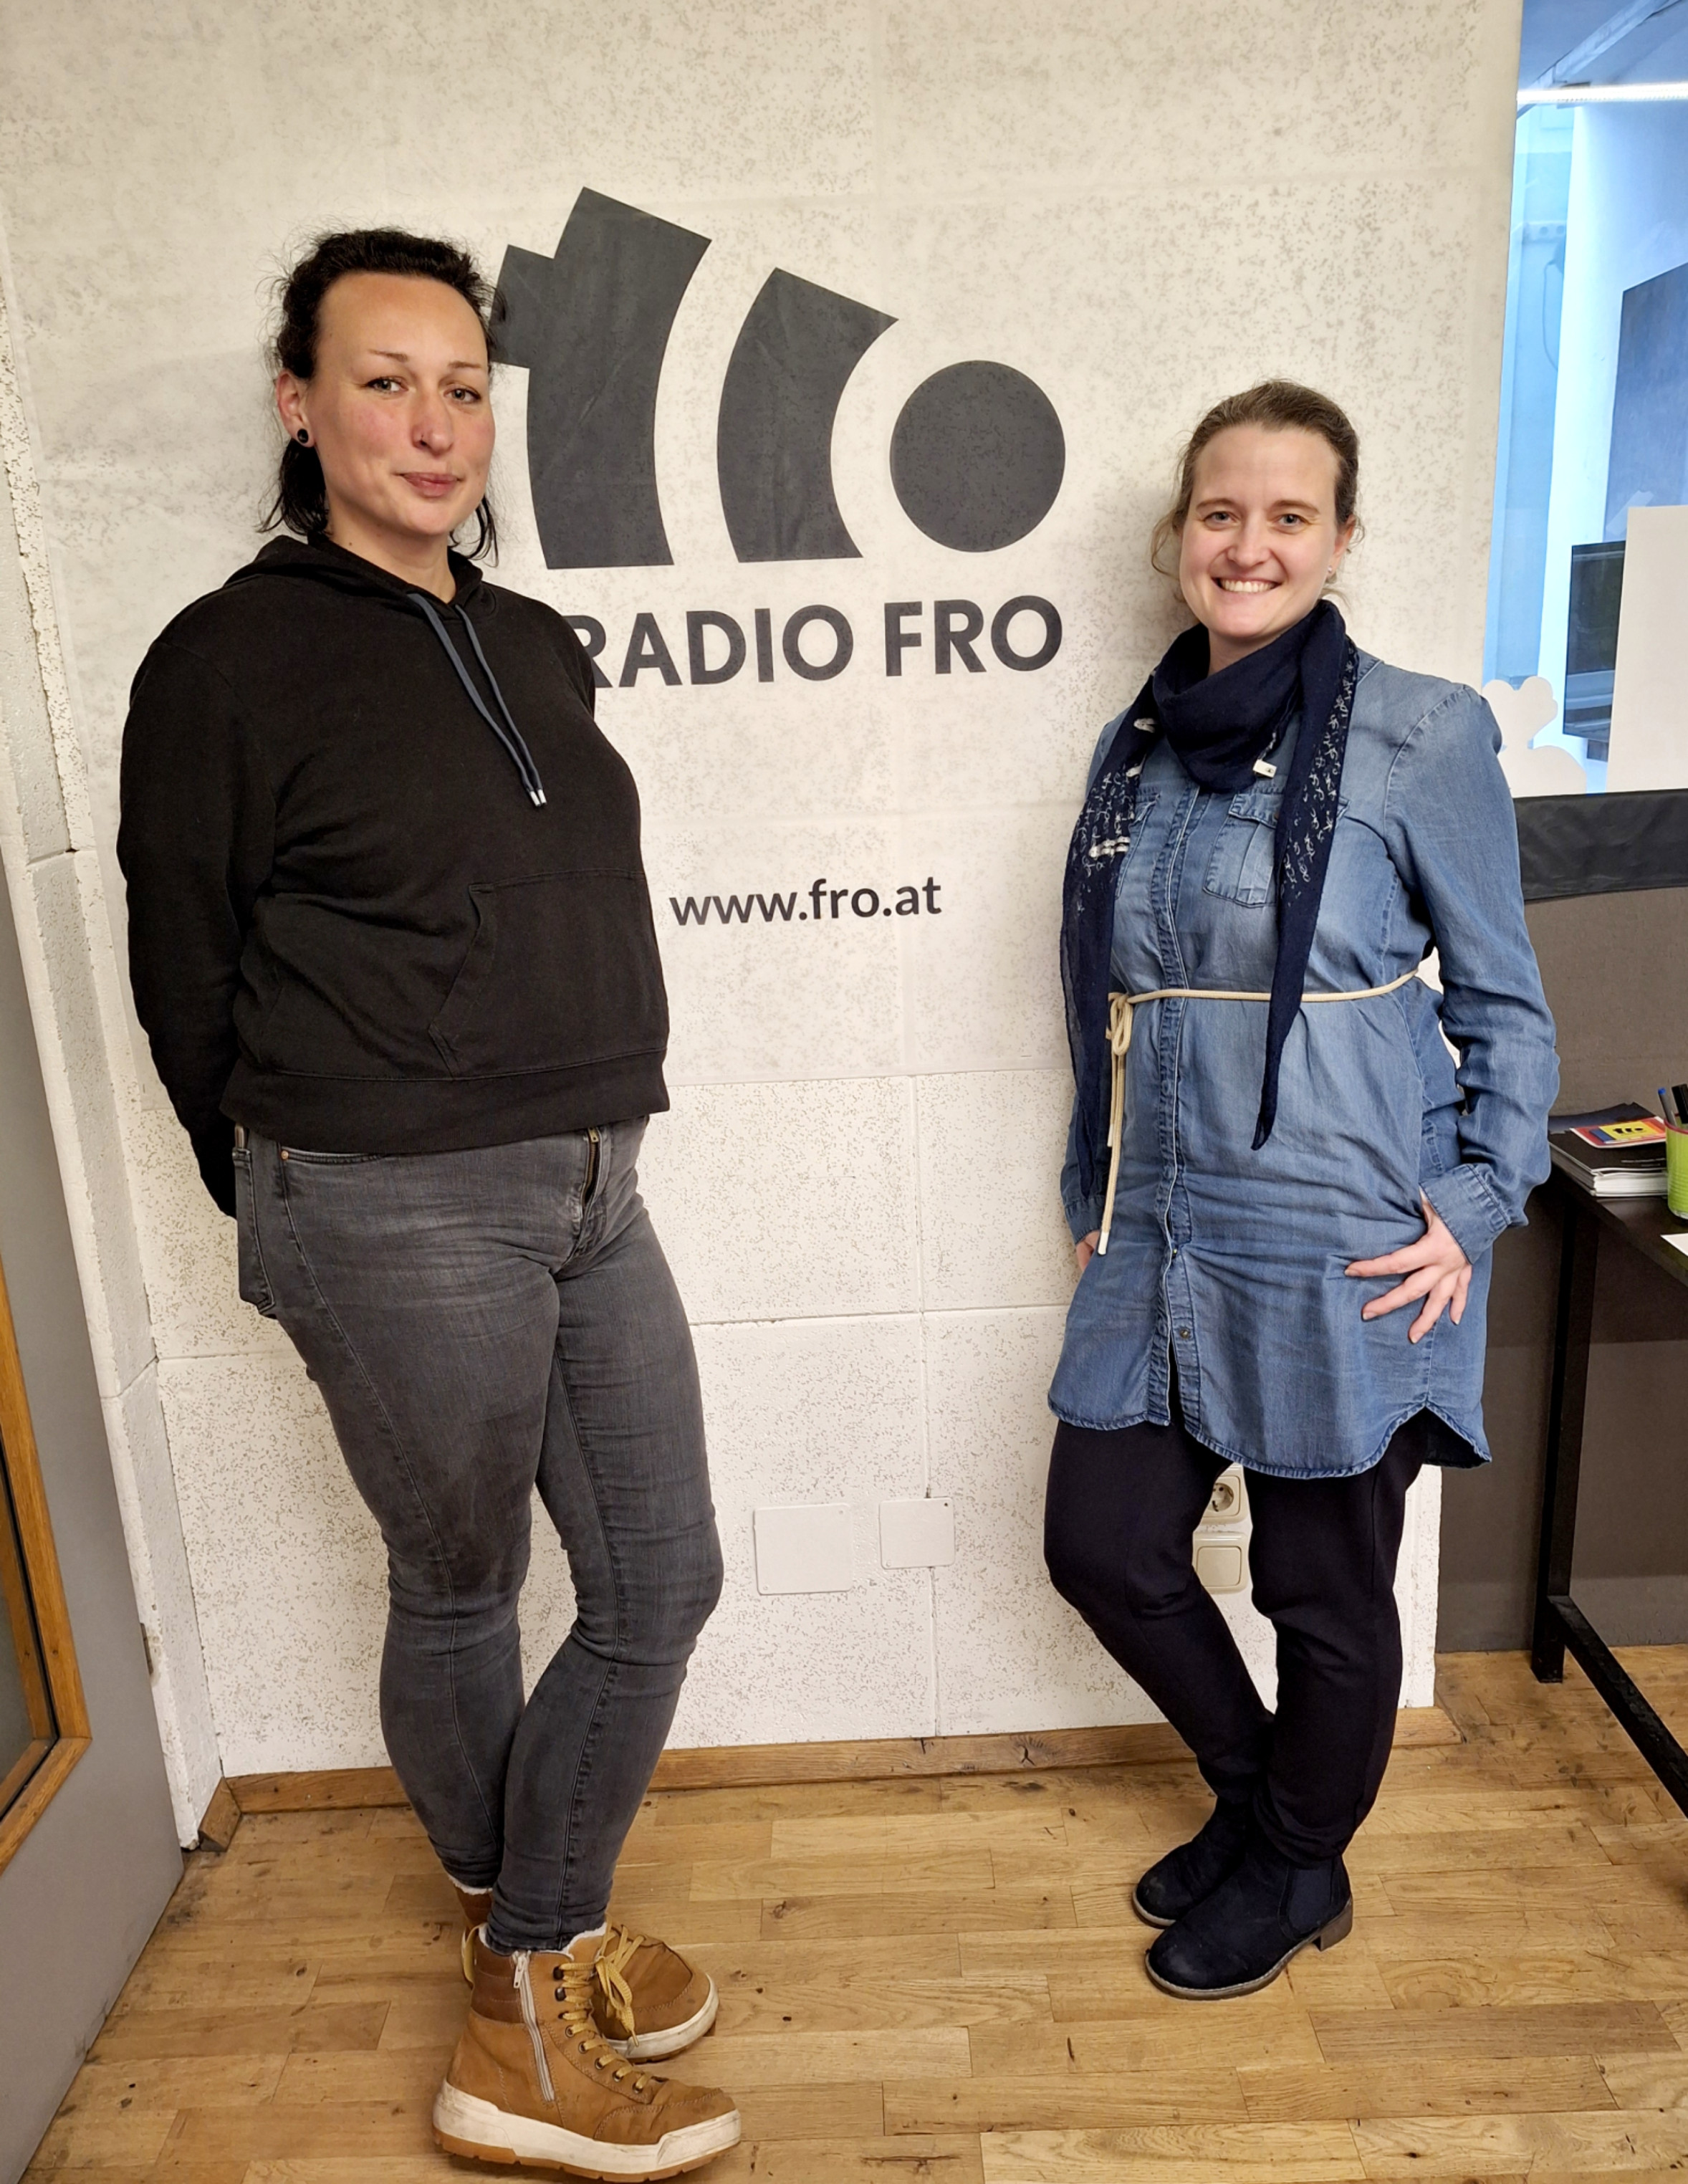 2 Frauen stehen vor einer weißen Wand, auf der das Radio FRO Logo in Schwarz zu sehen ist. 